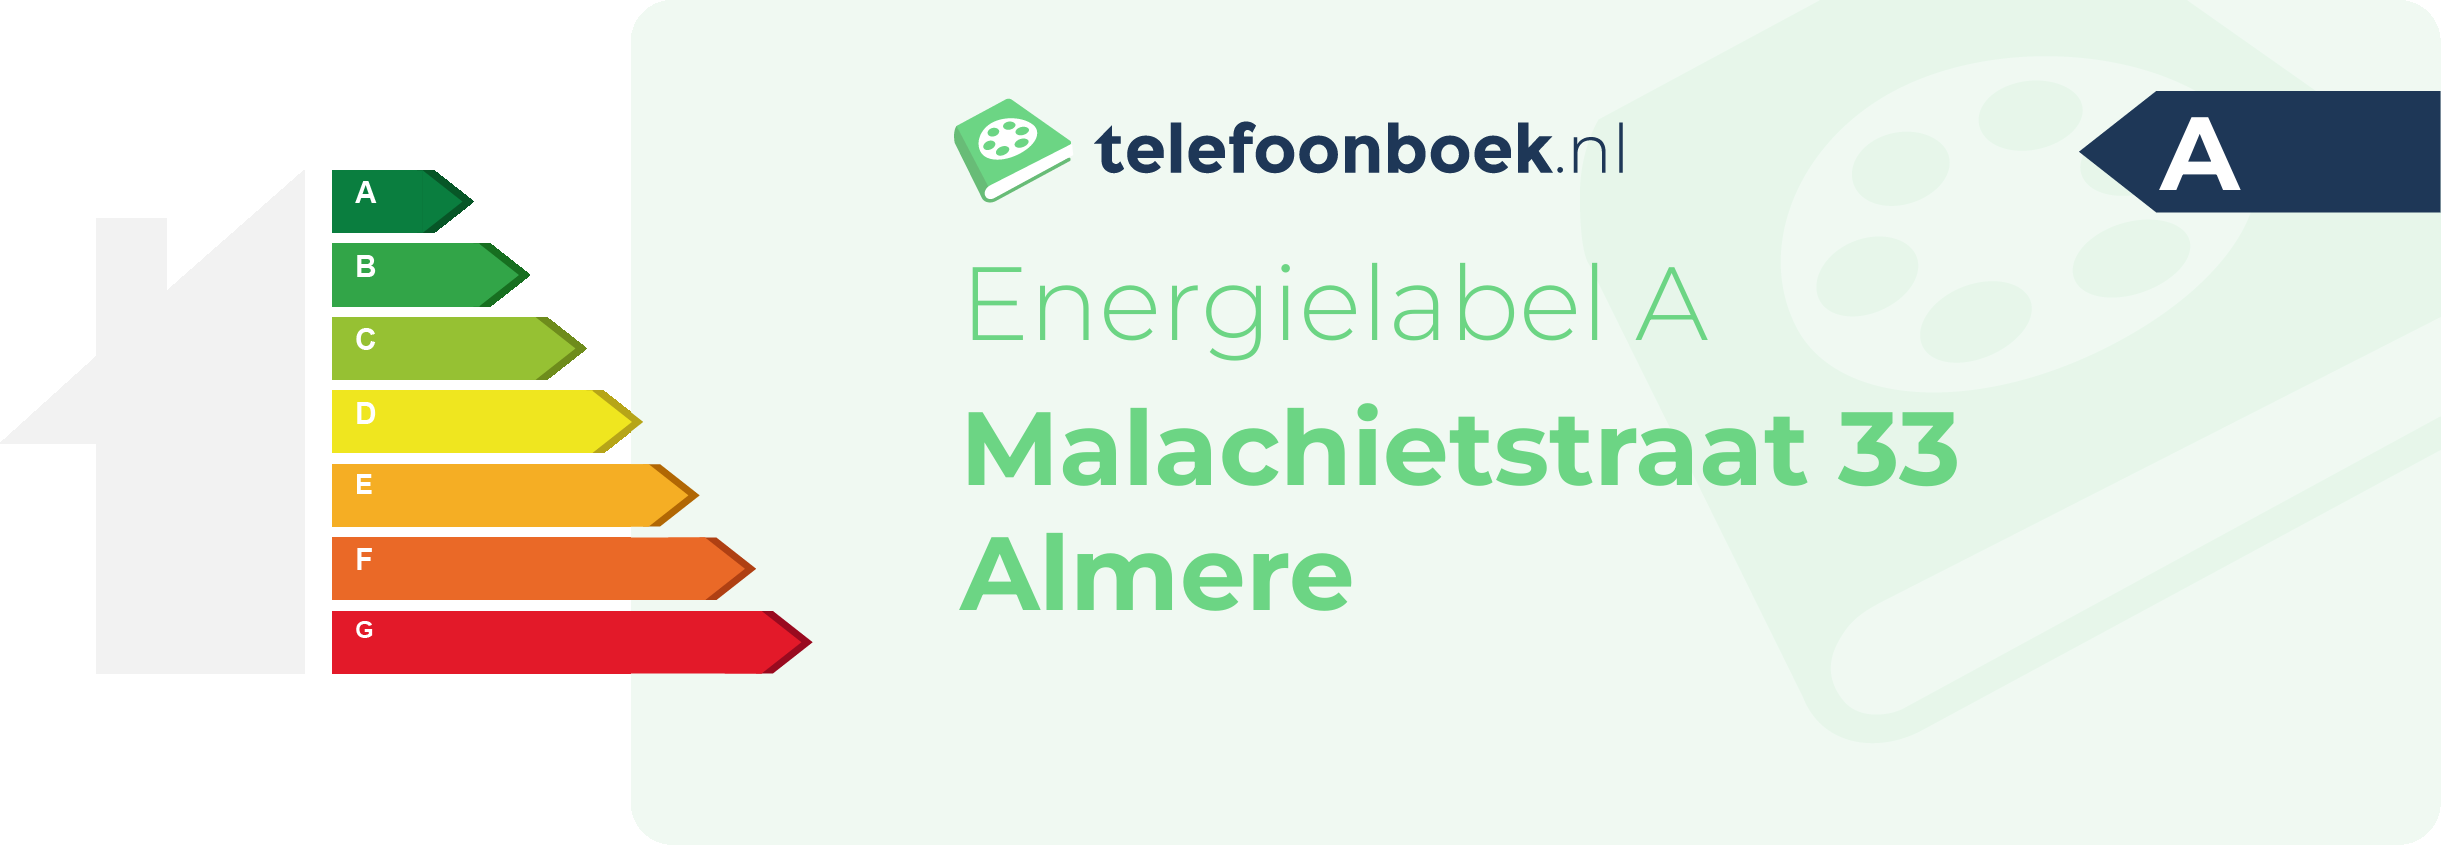 Energielabel Malachietstraat 33 Almere